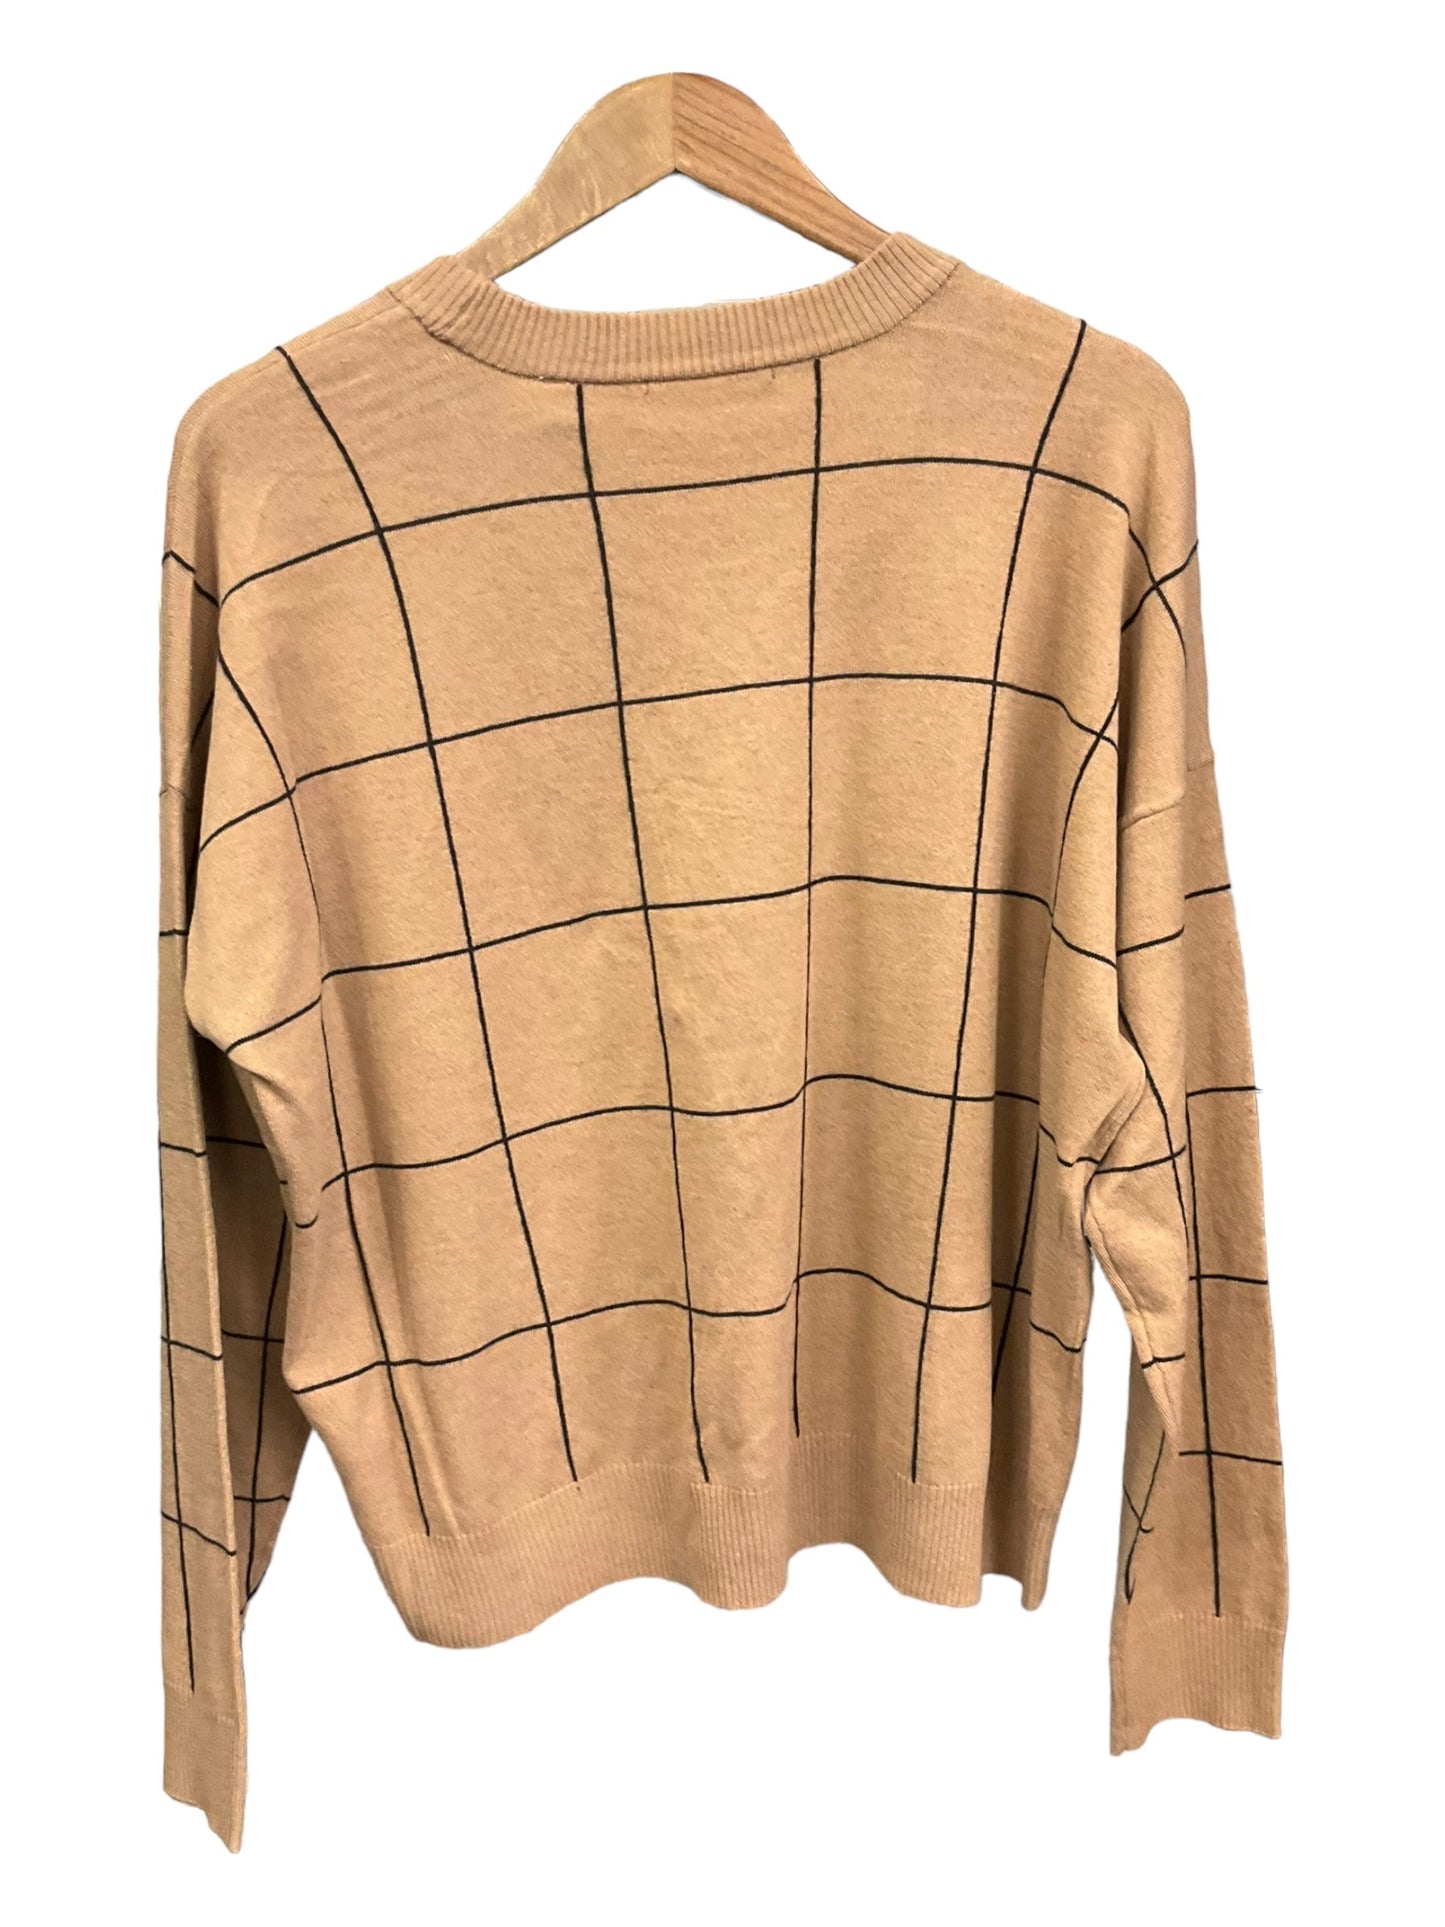 Sweater By T Tahari  Size: Xl